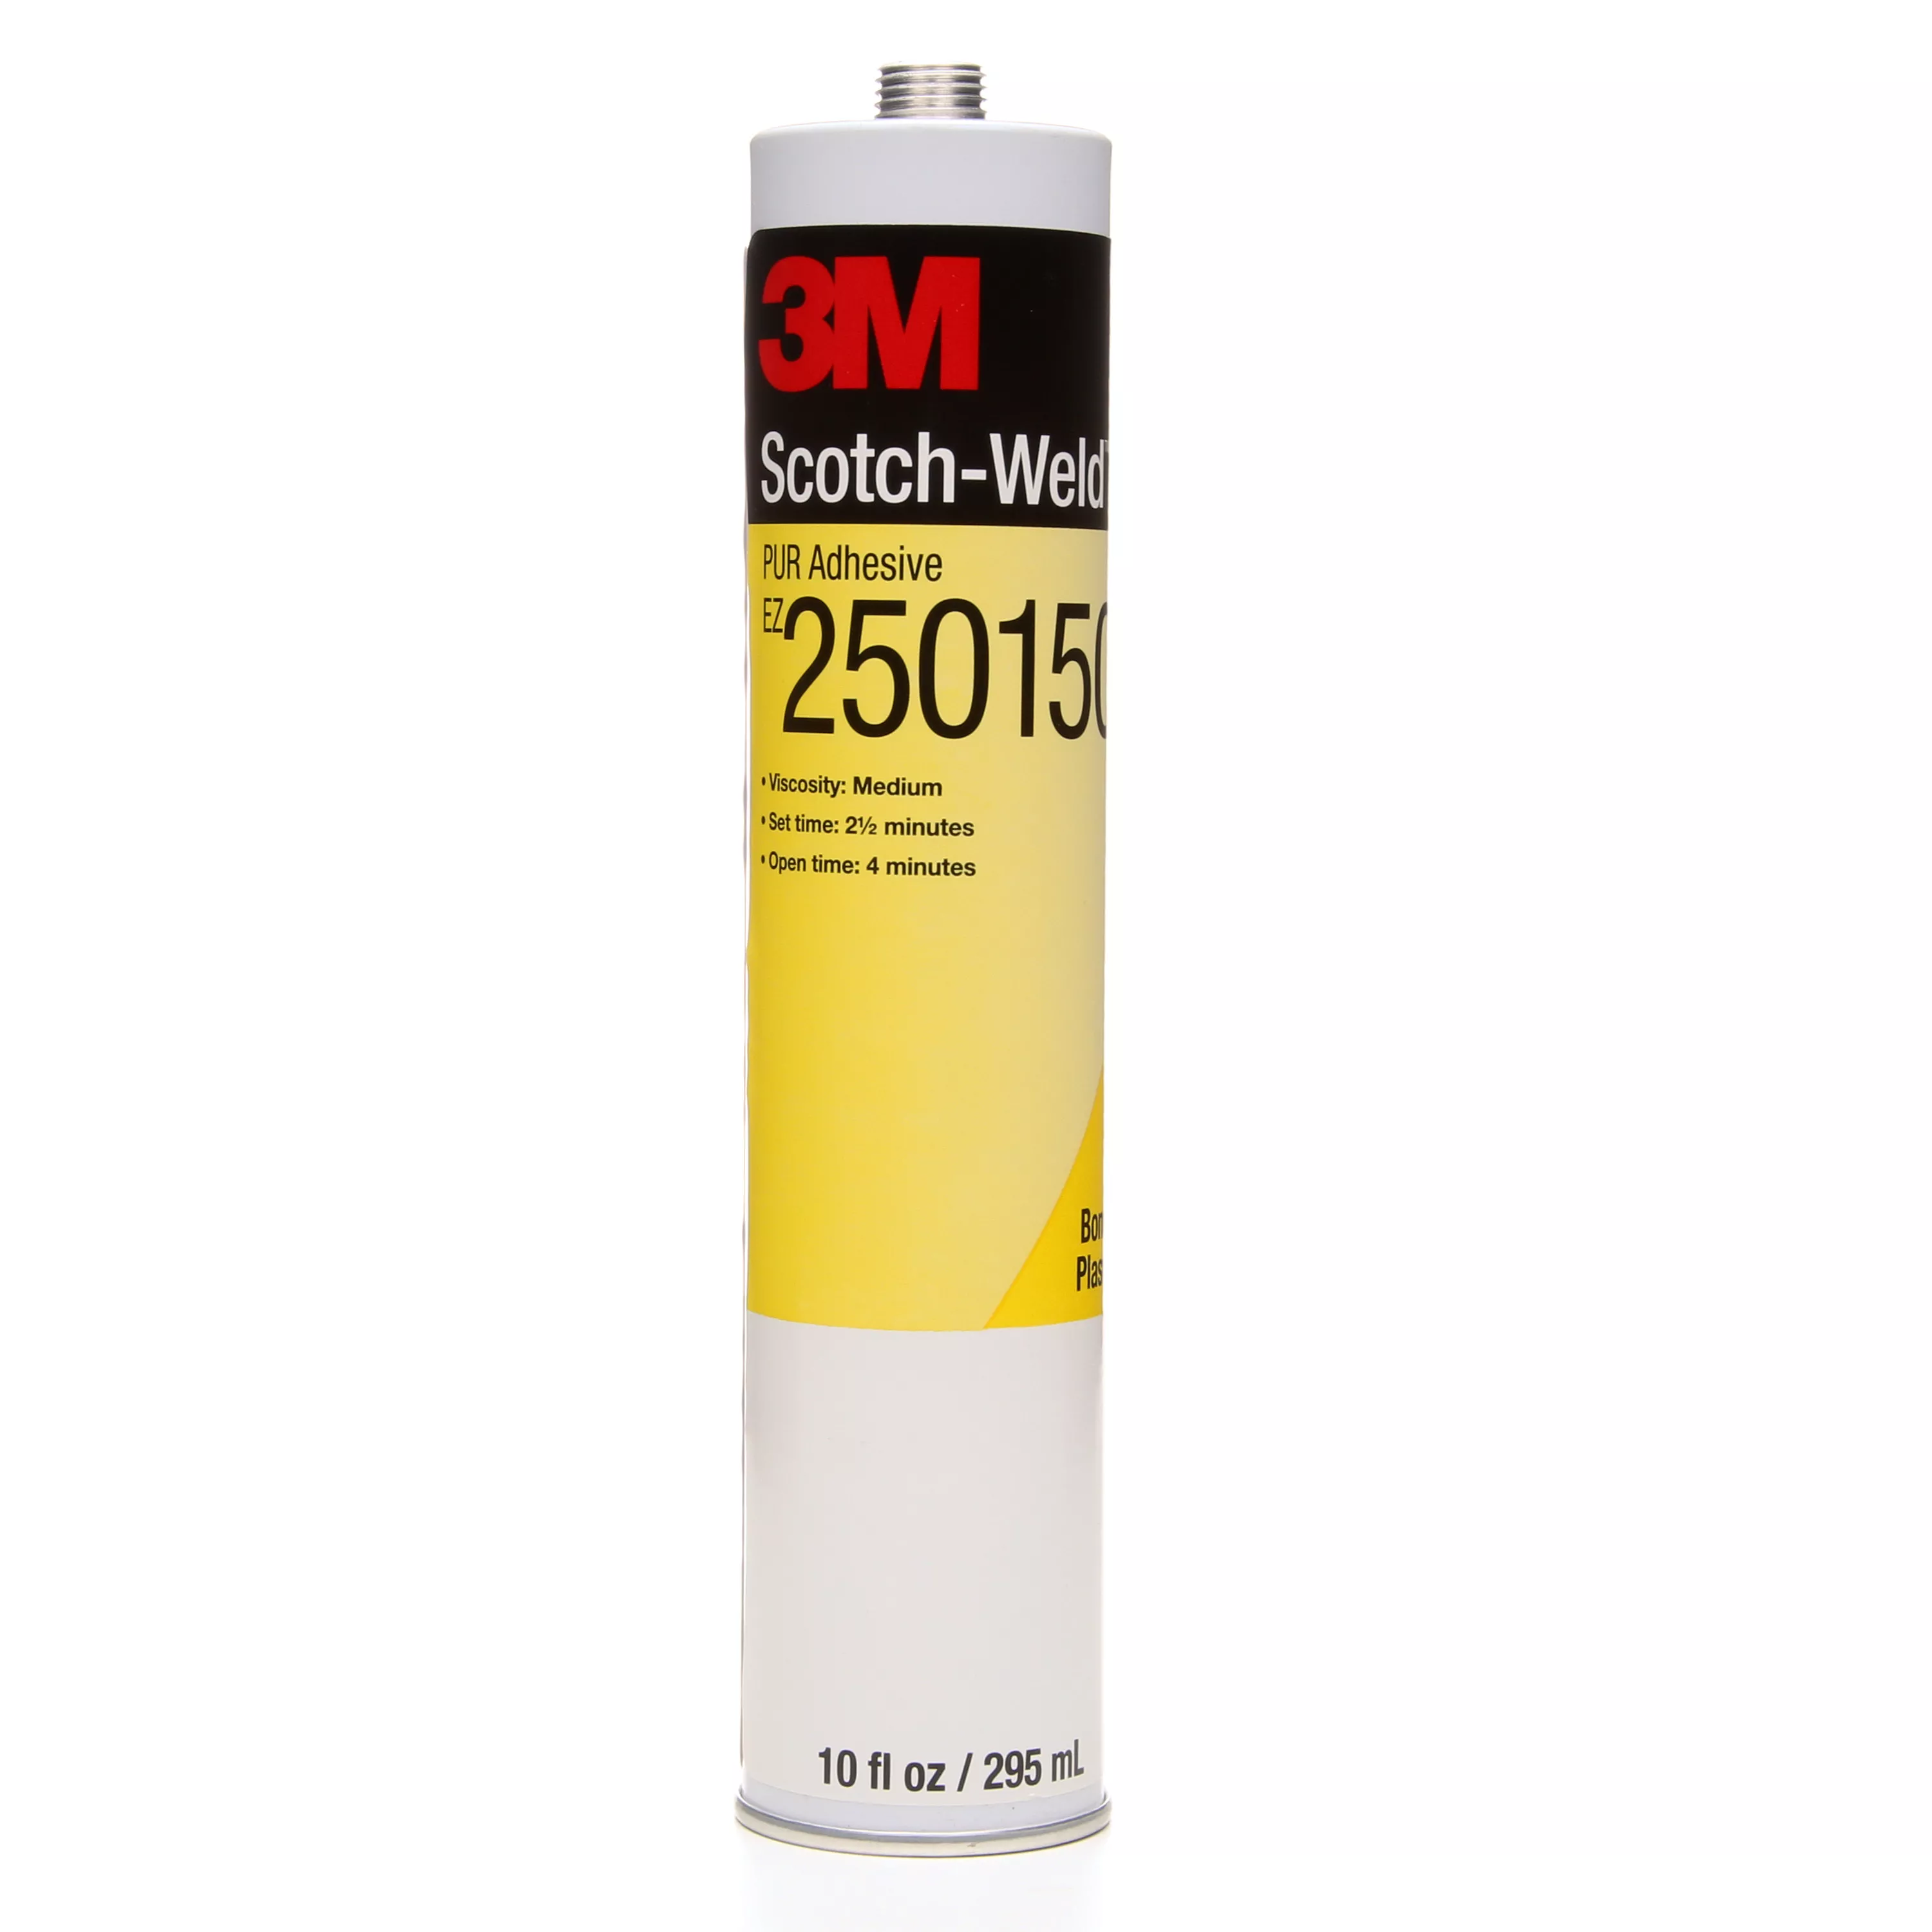 SKU 7000046533 | 3M™ Scotch-Weld™ PUR Adhesive EZ250150